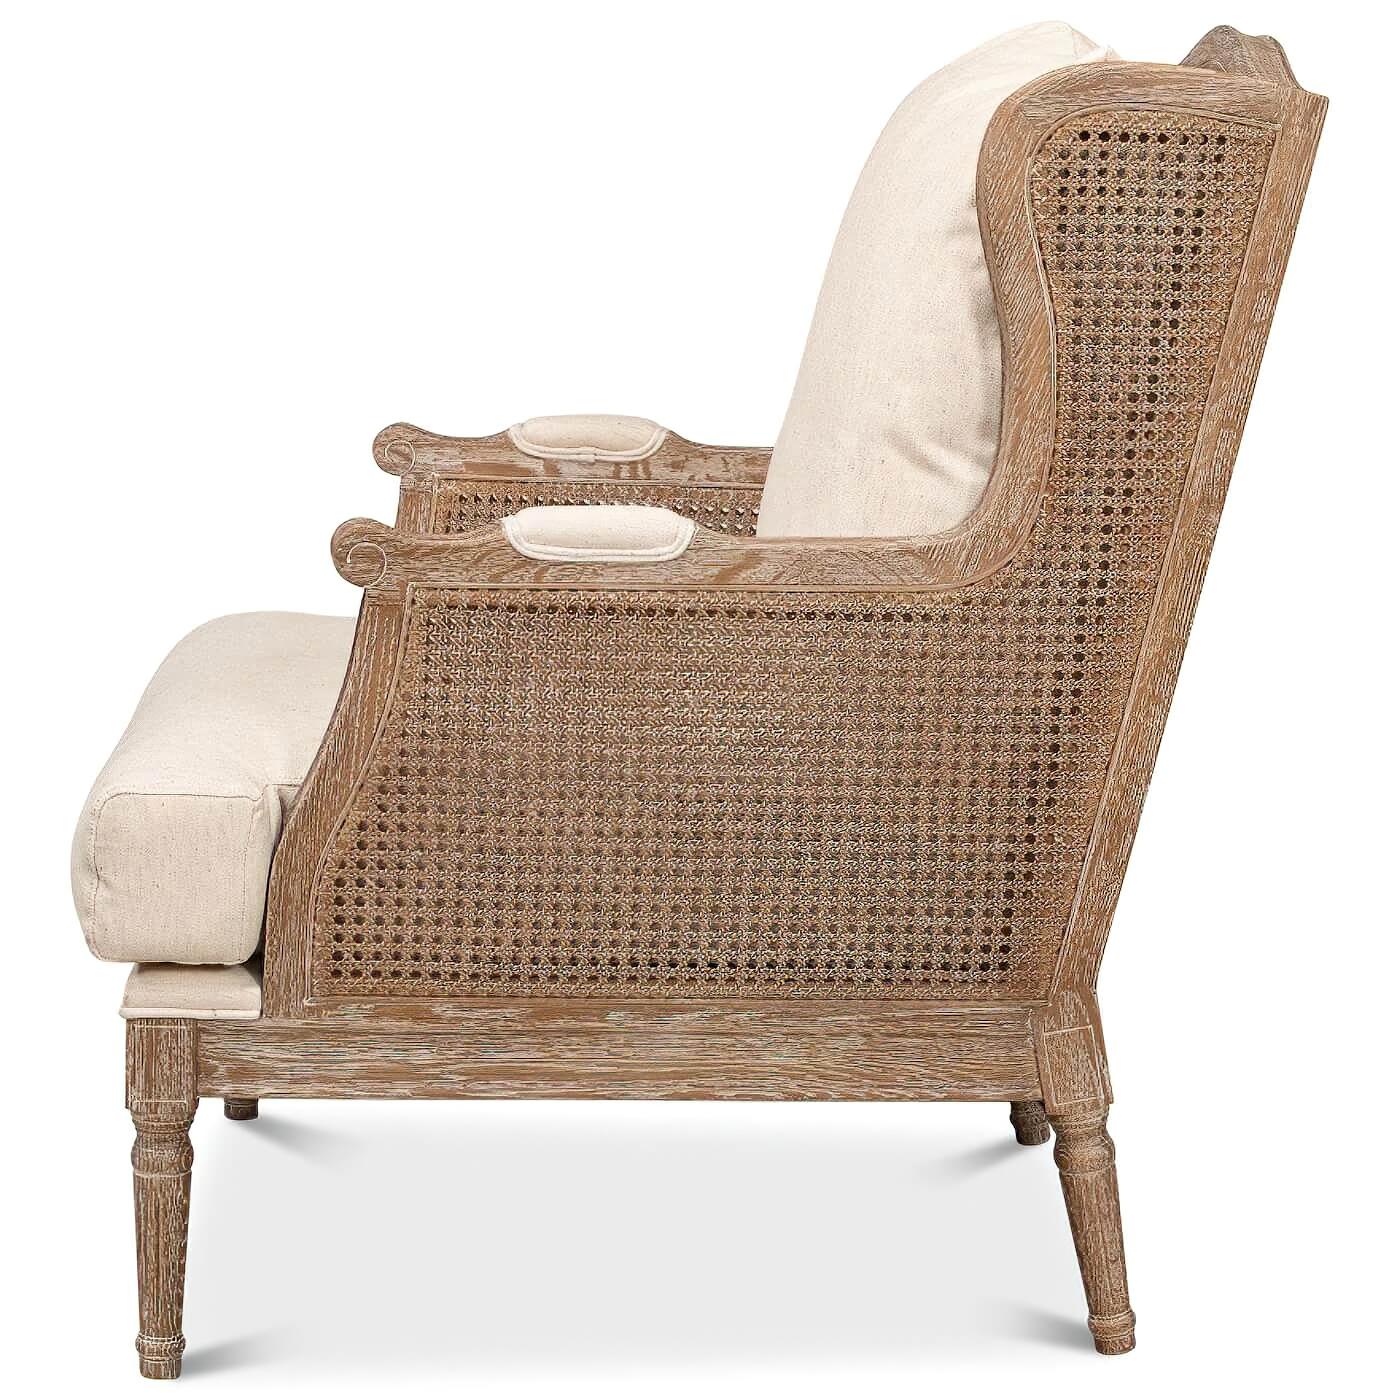 Ein französischer Louis XVI-Stil weiß getünchter Ohrensessel mit Rohrrücken und -seiten. Dieser schöne Stuhl hat ein elfenbeinfarbenes, mit Leinen gepolstertes Sitz- und Rückenkissen. Er ist aus weiß gekalkter Eiche gefertigt und mit einer beigen